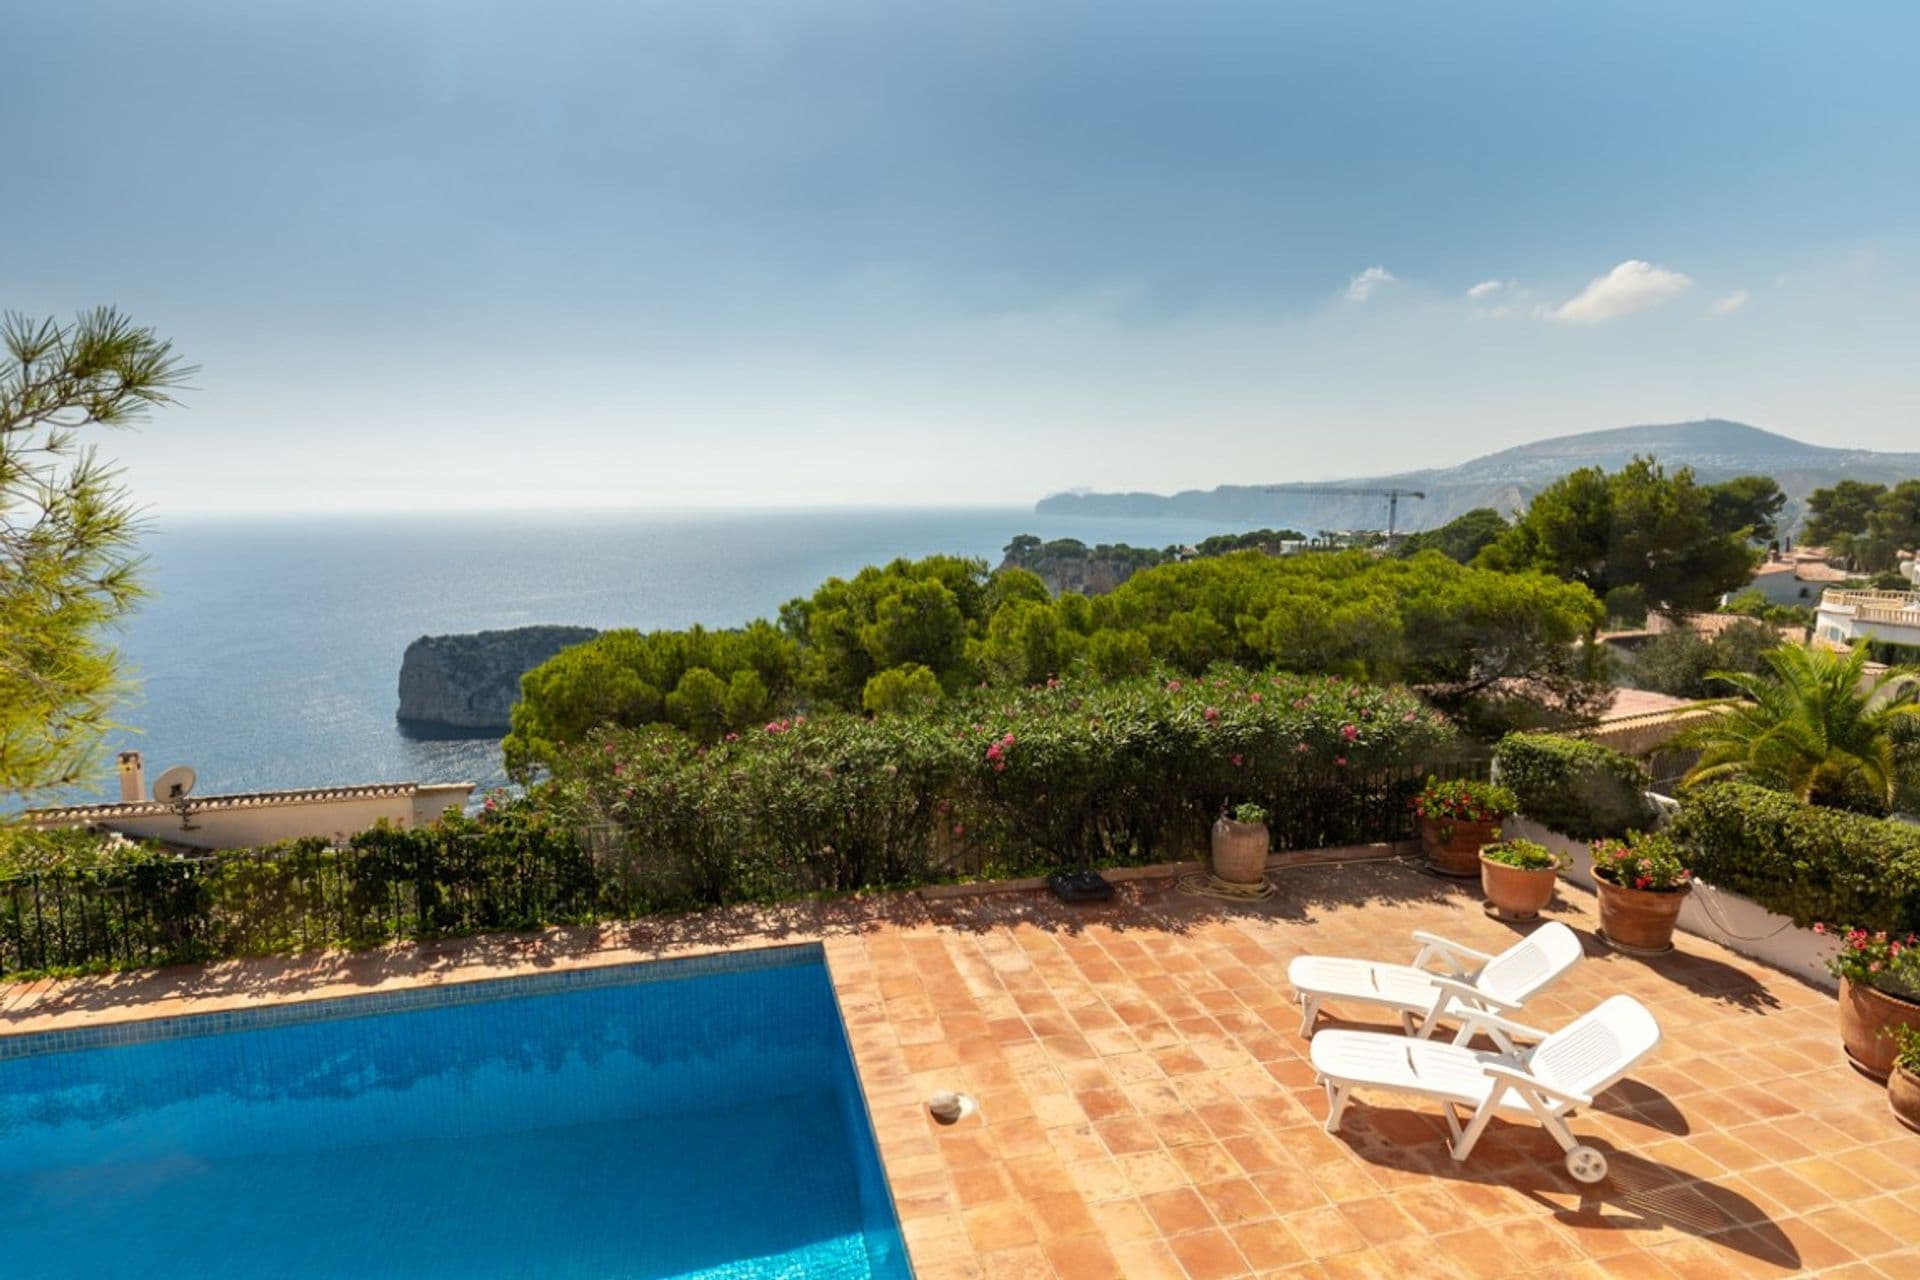 Merveilleuse villa avec de fabuleuses vues sur la mer Méditerranée, située dans le quartier de Ambolo, Jávea.